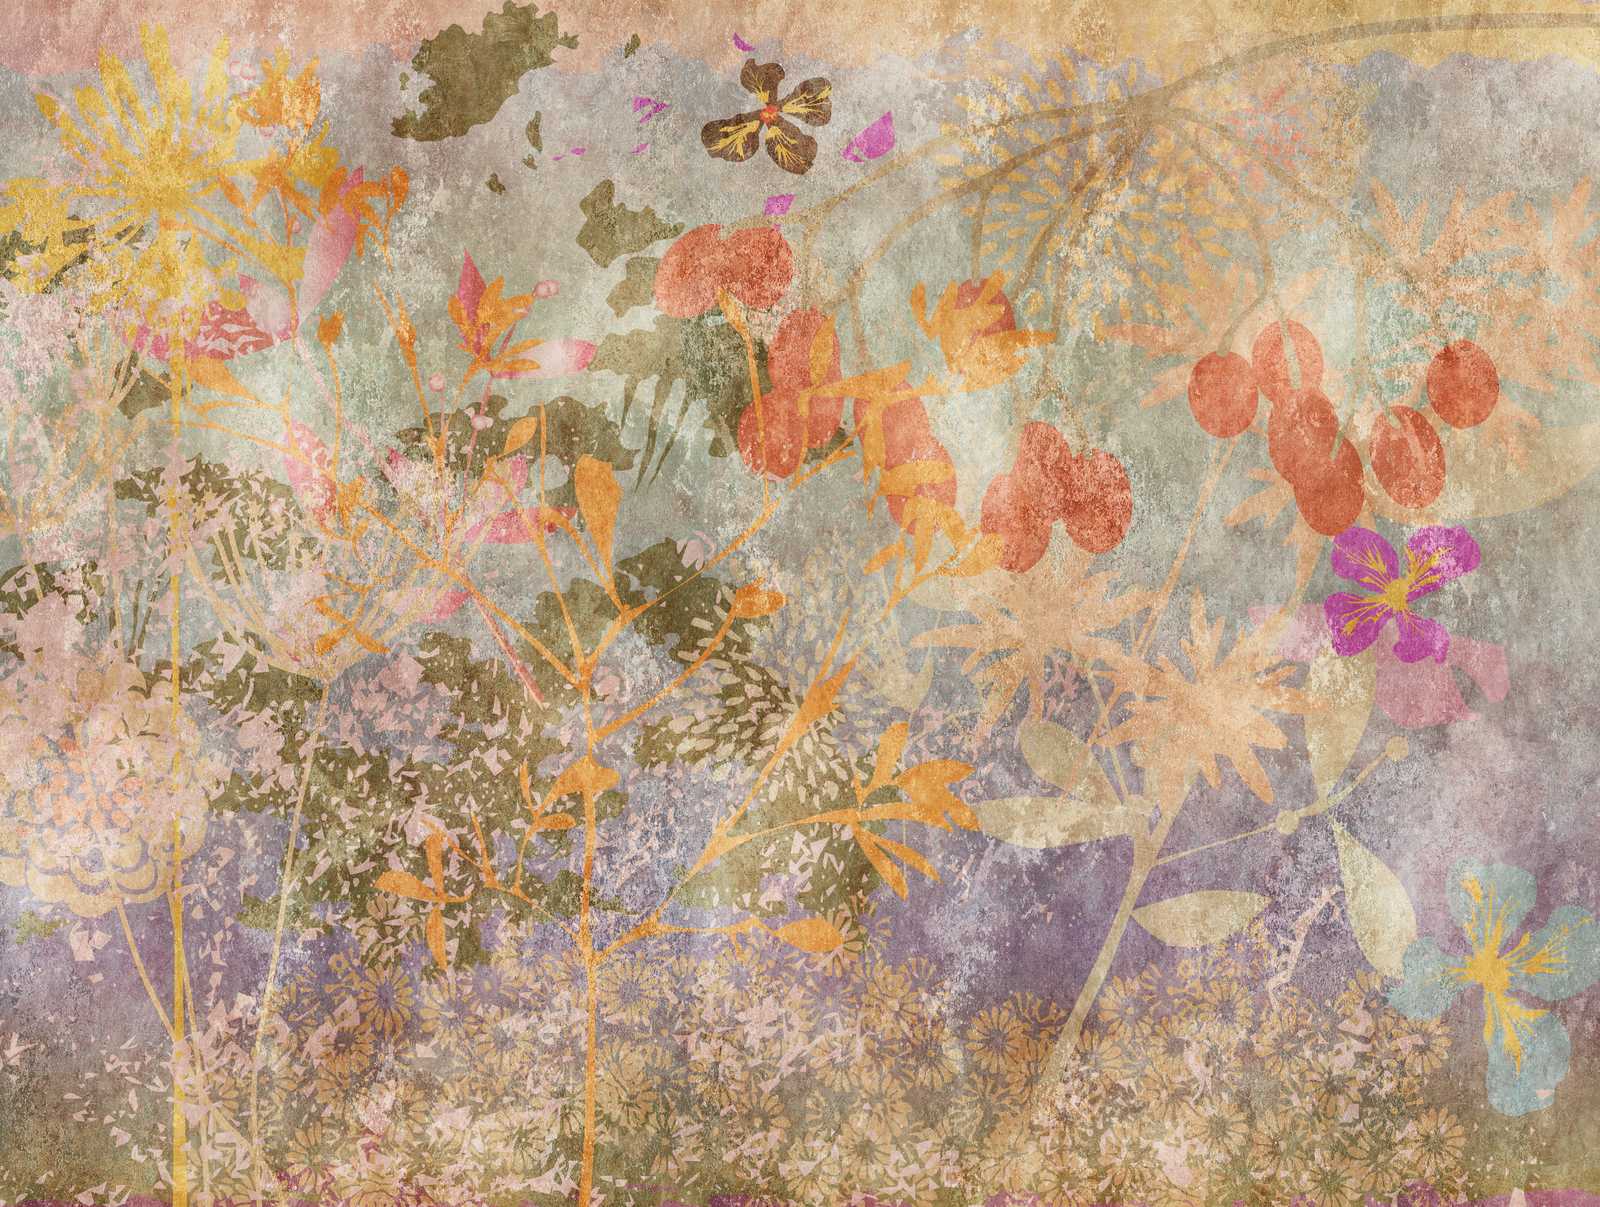             Wallpaper novelty - motif wallpaper flowers fresco in retro style
        